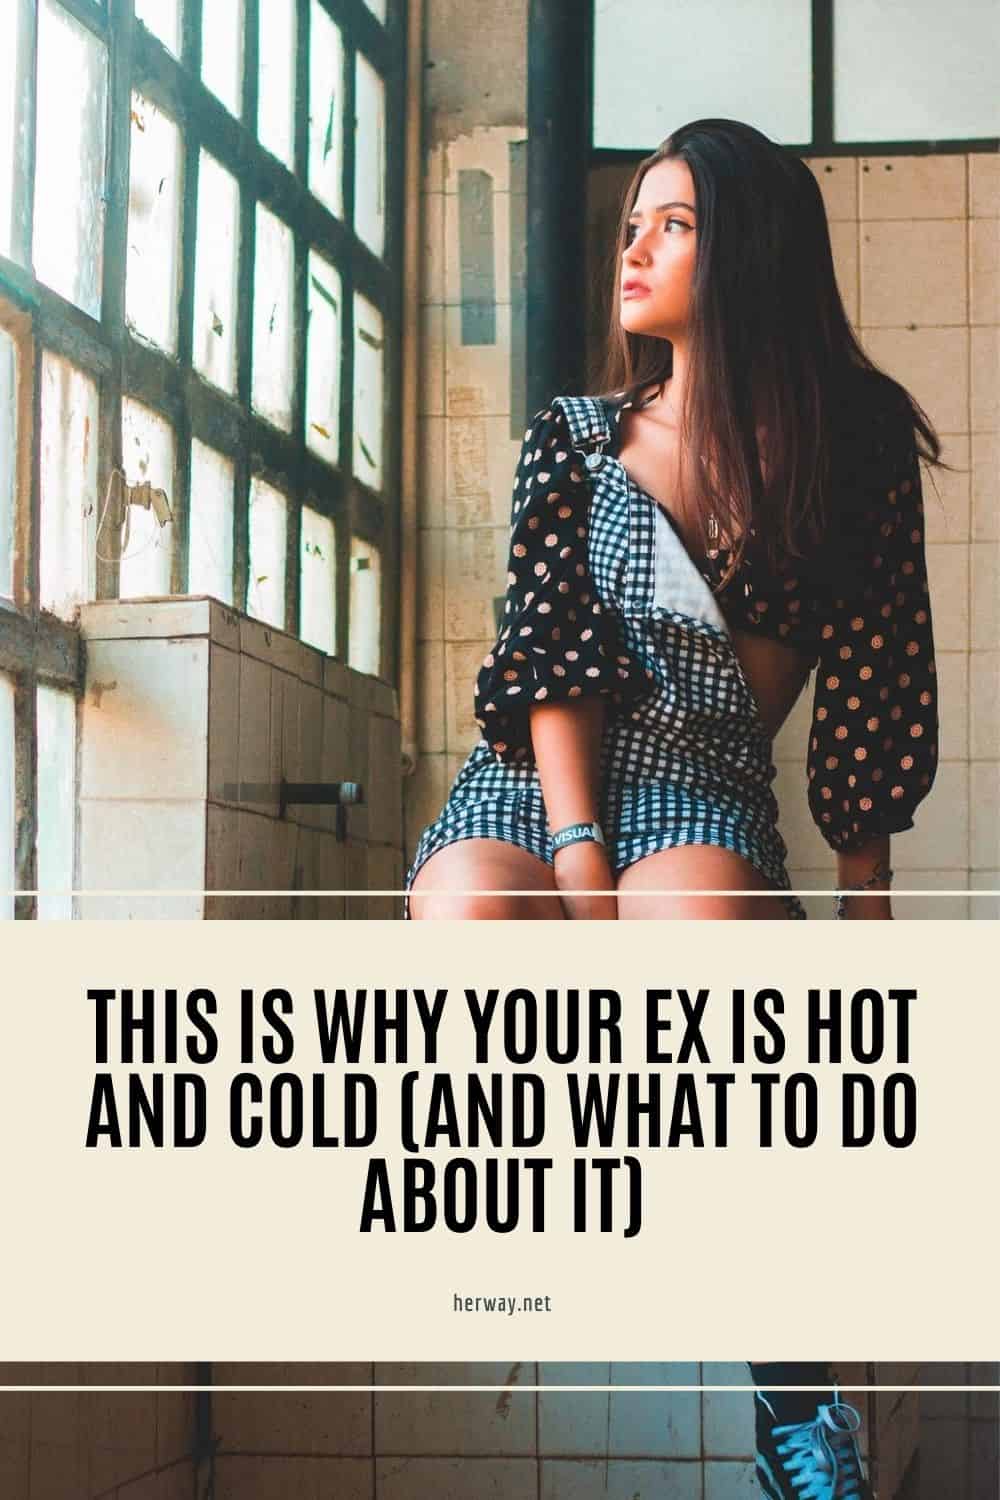 Ecco perché il vostro ex è caldo e freddo (e cosa fare)